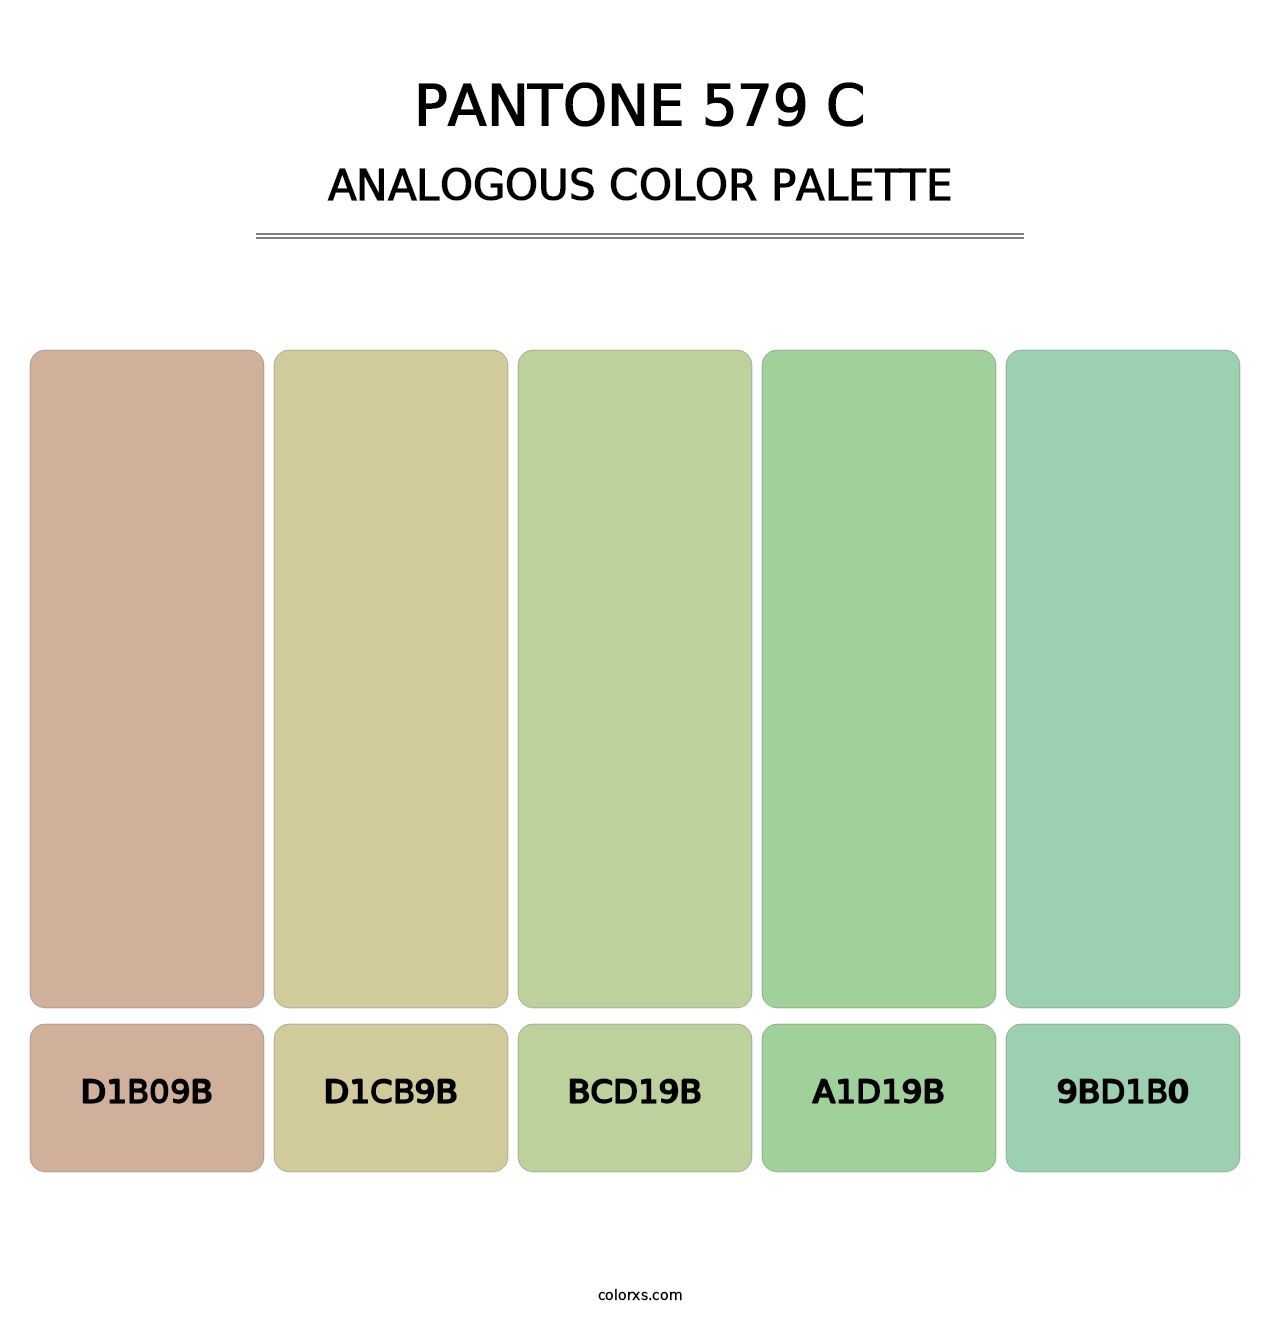 PANTONE 579 C - Analogous Color Palette